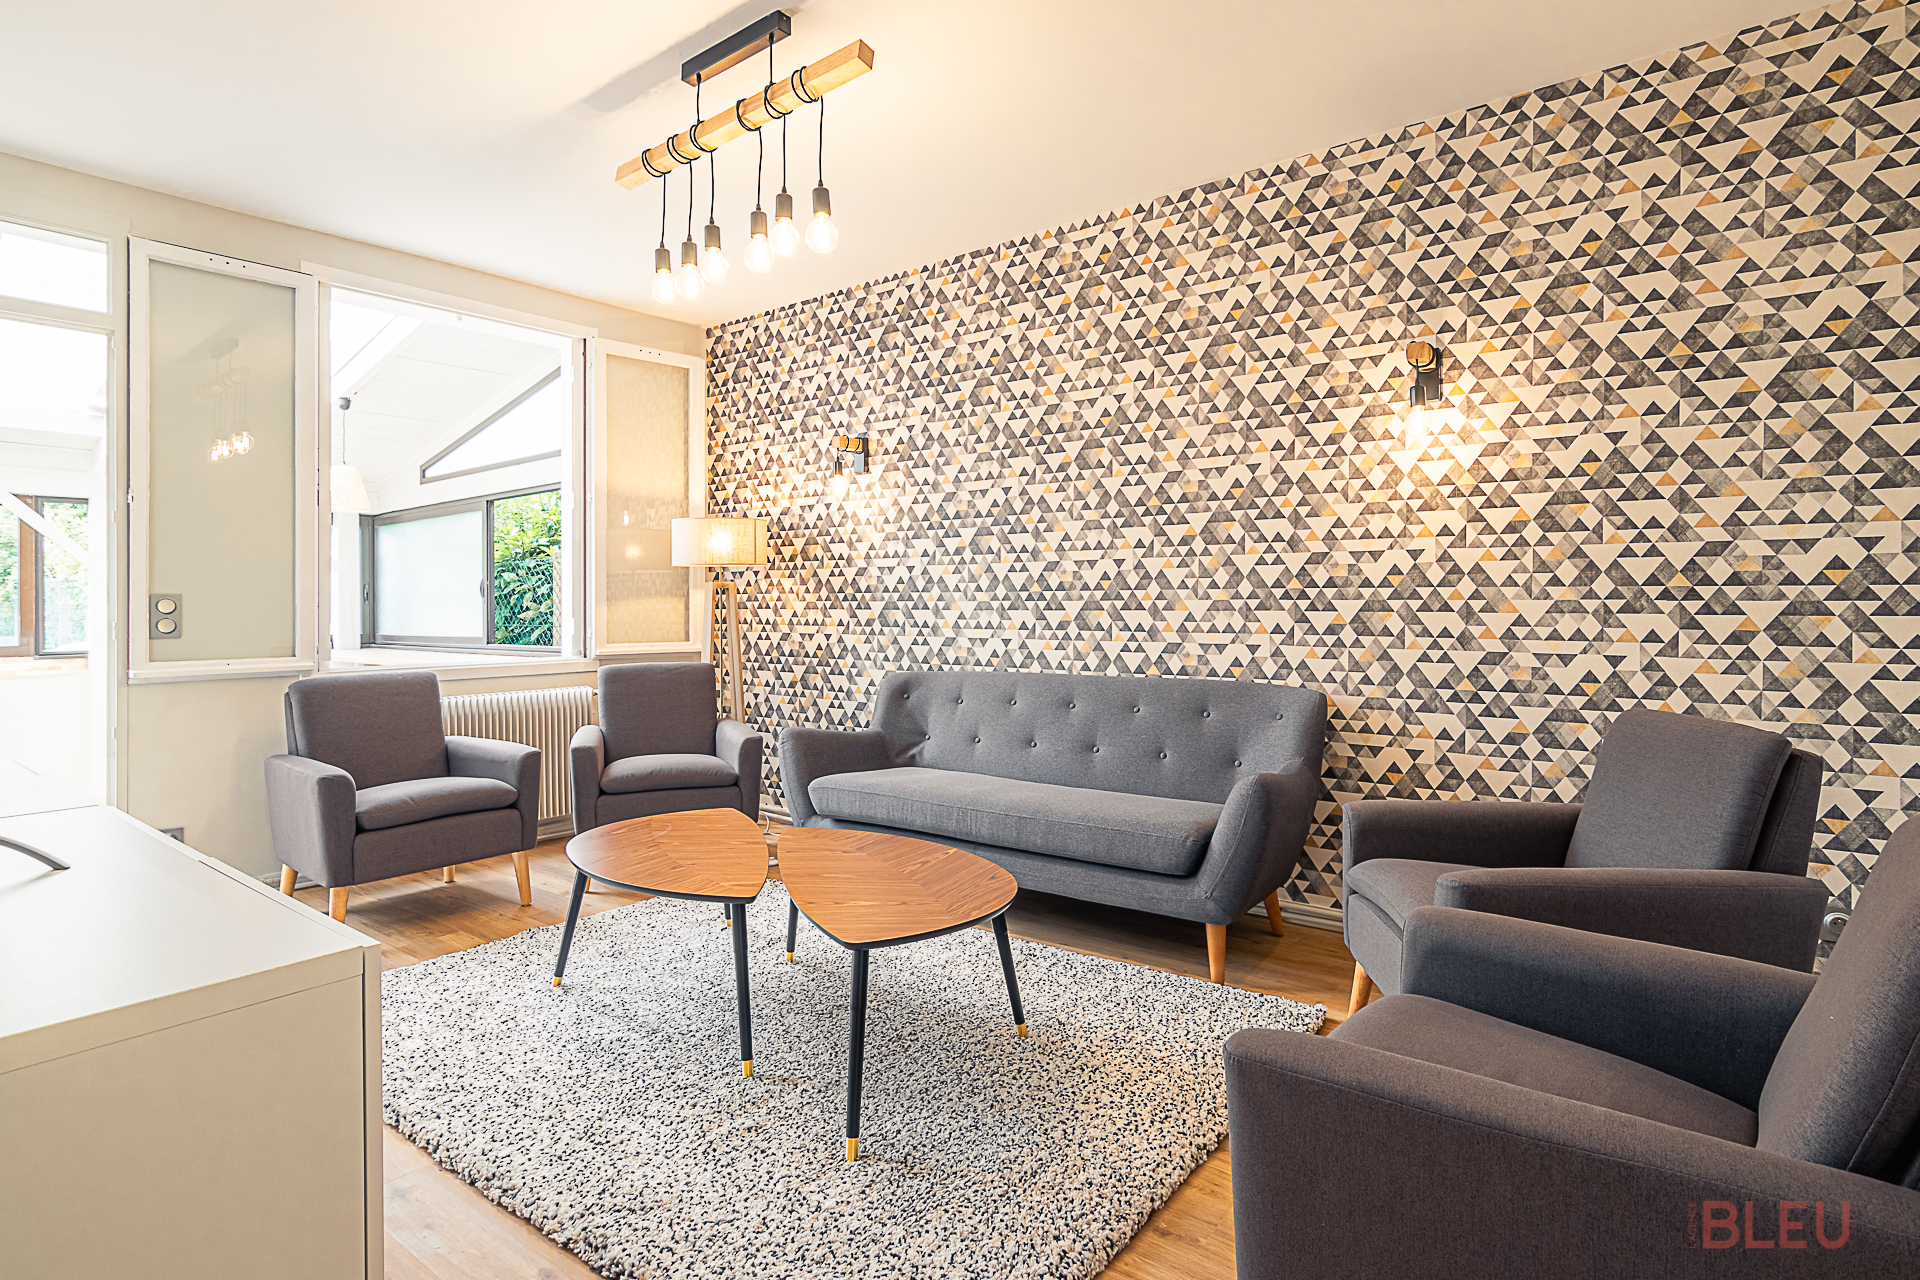 Salon moderne et lumineux avec mobilier gris, papier peint géométrique et éclairage industriel dans une maison de ville à Paris, conçu par un architecte d'intérieur.